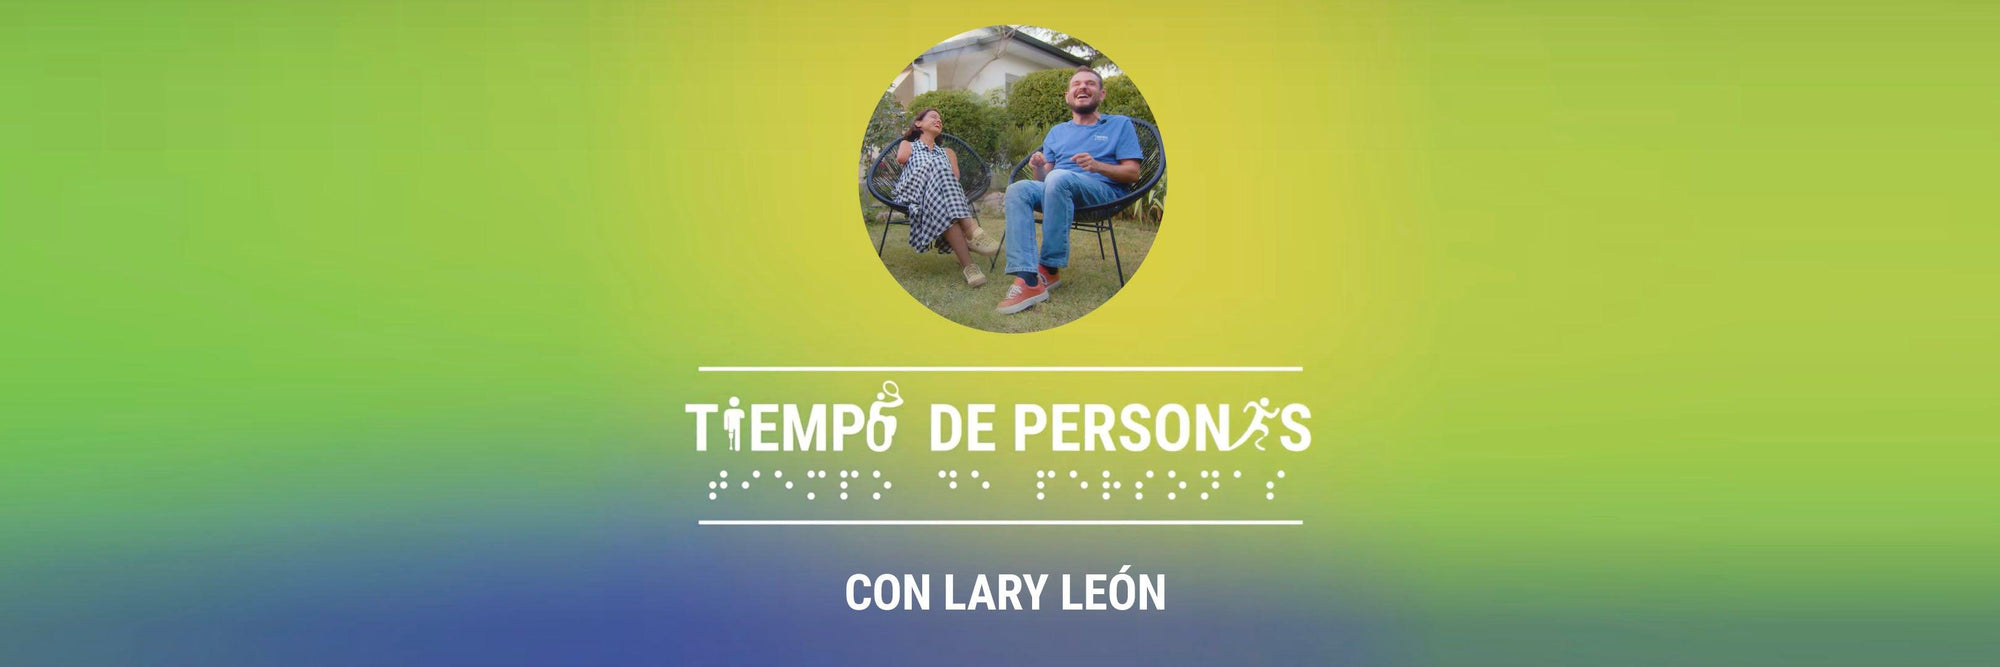 Tiempo de personas - 02 Lary León 